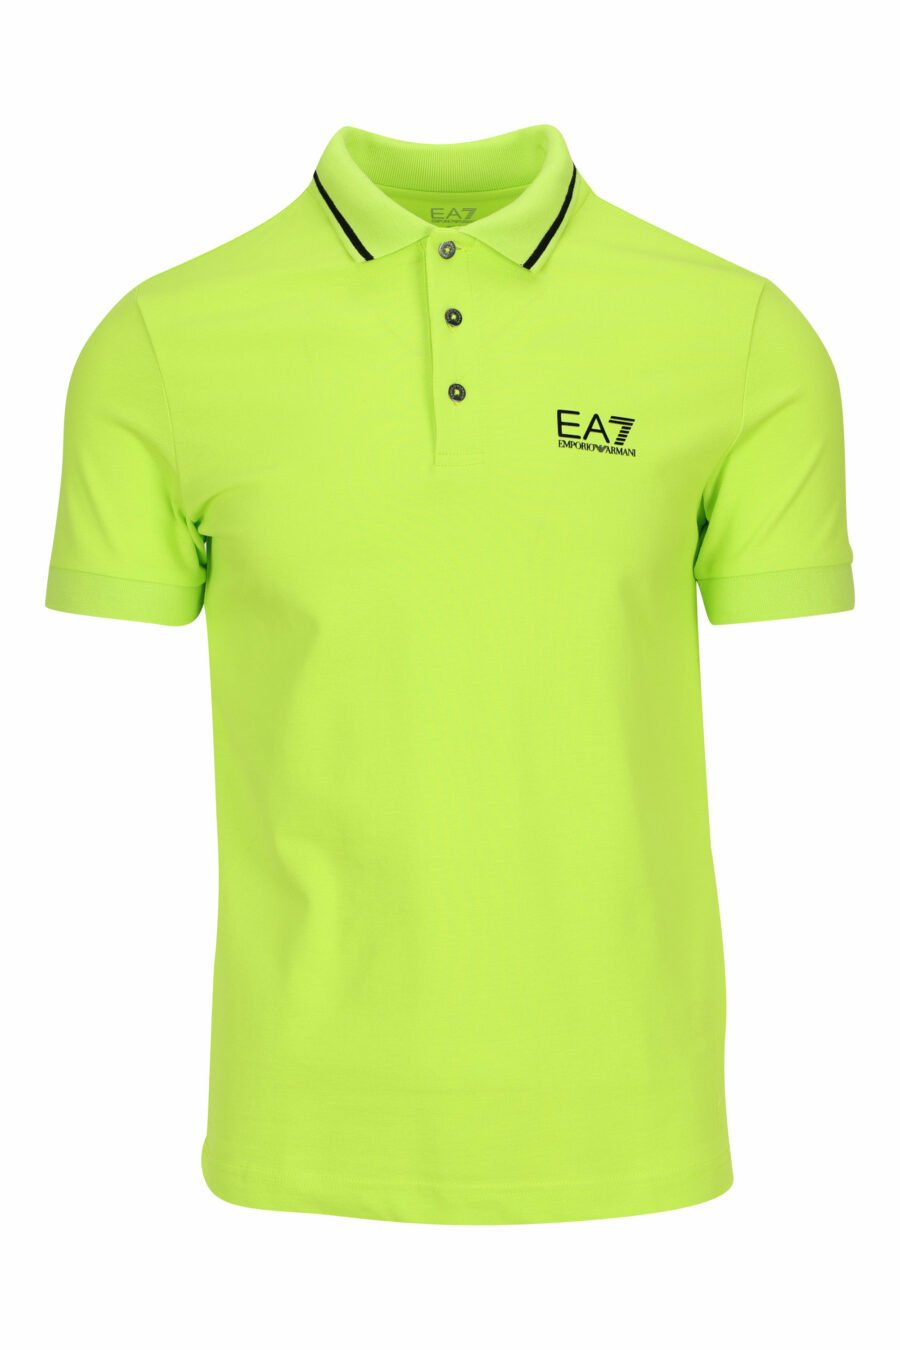 Limonengrünes Poloshirt mit "lux identity" Minilogo und weißen Linien am Kragen - 8058947503650